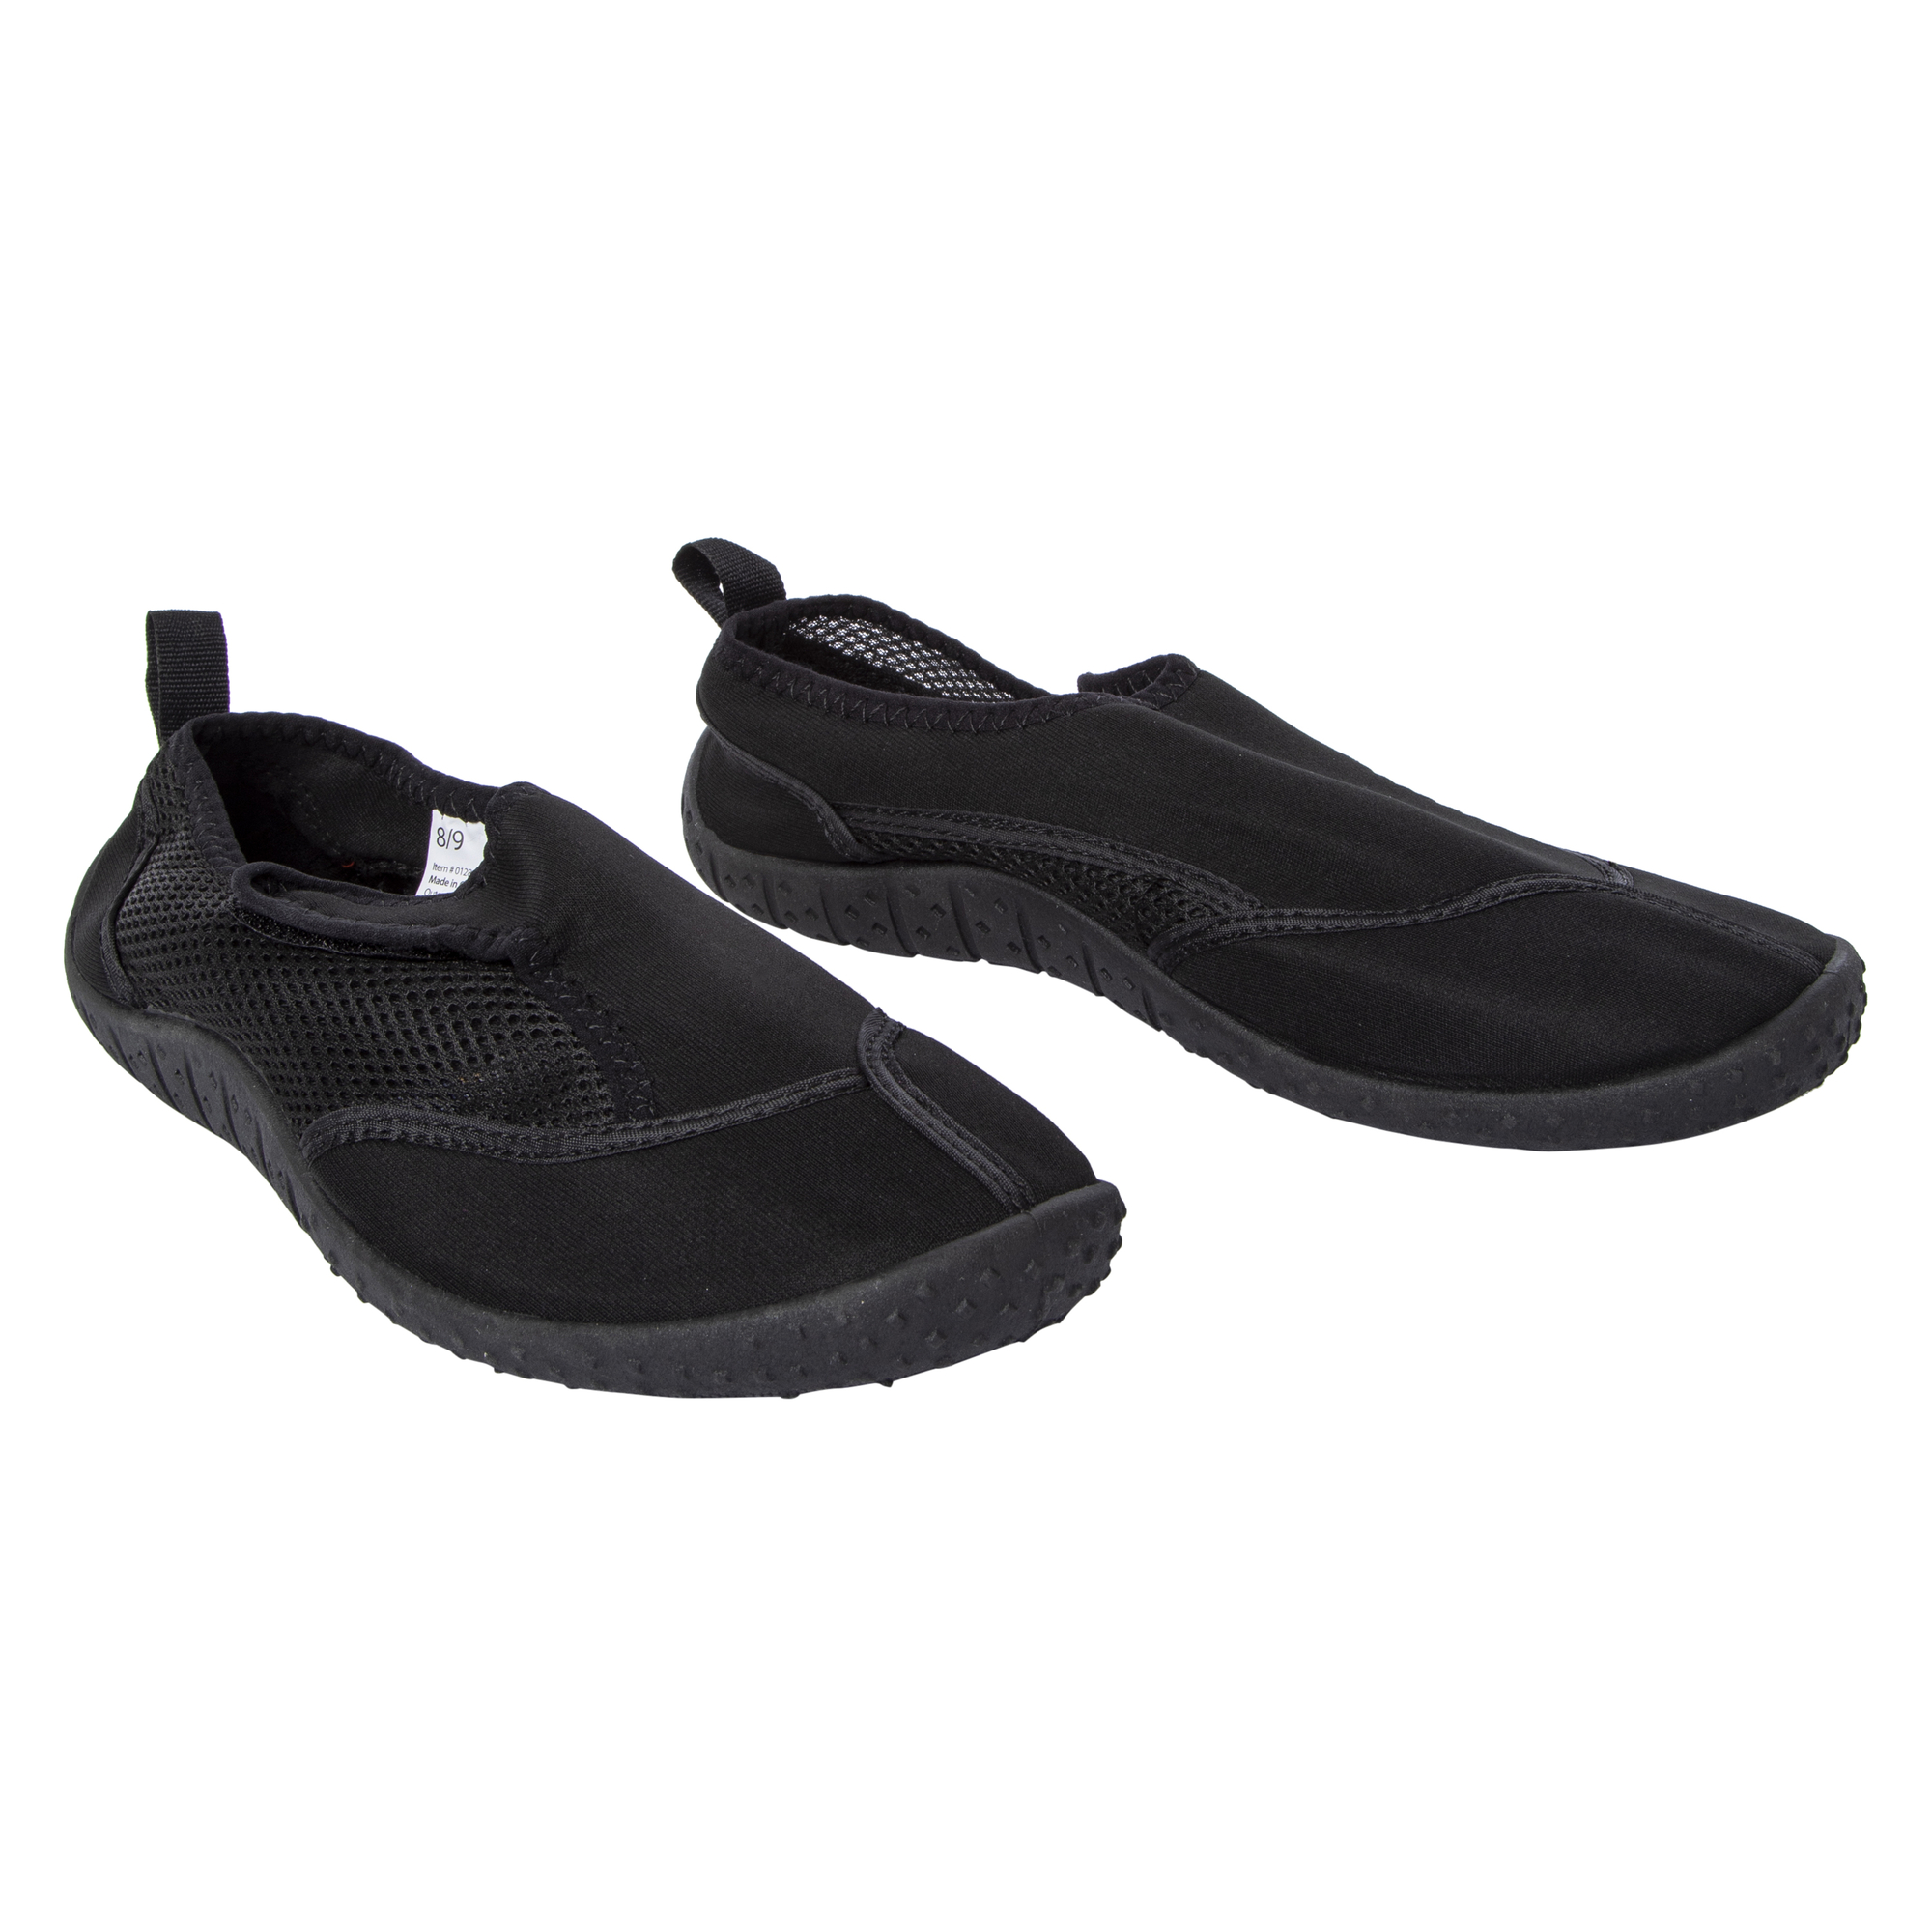 men's black water shoes